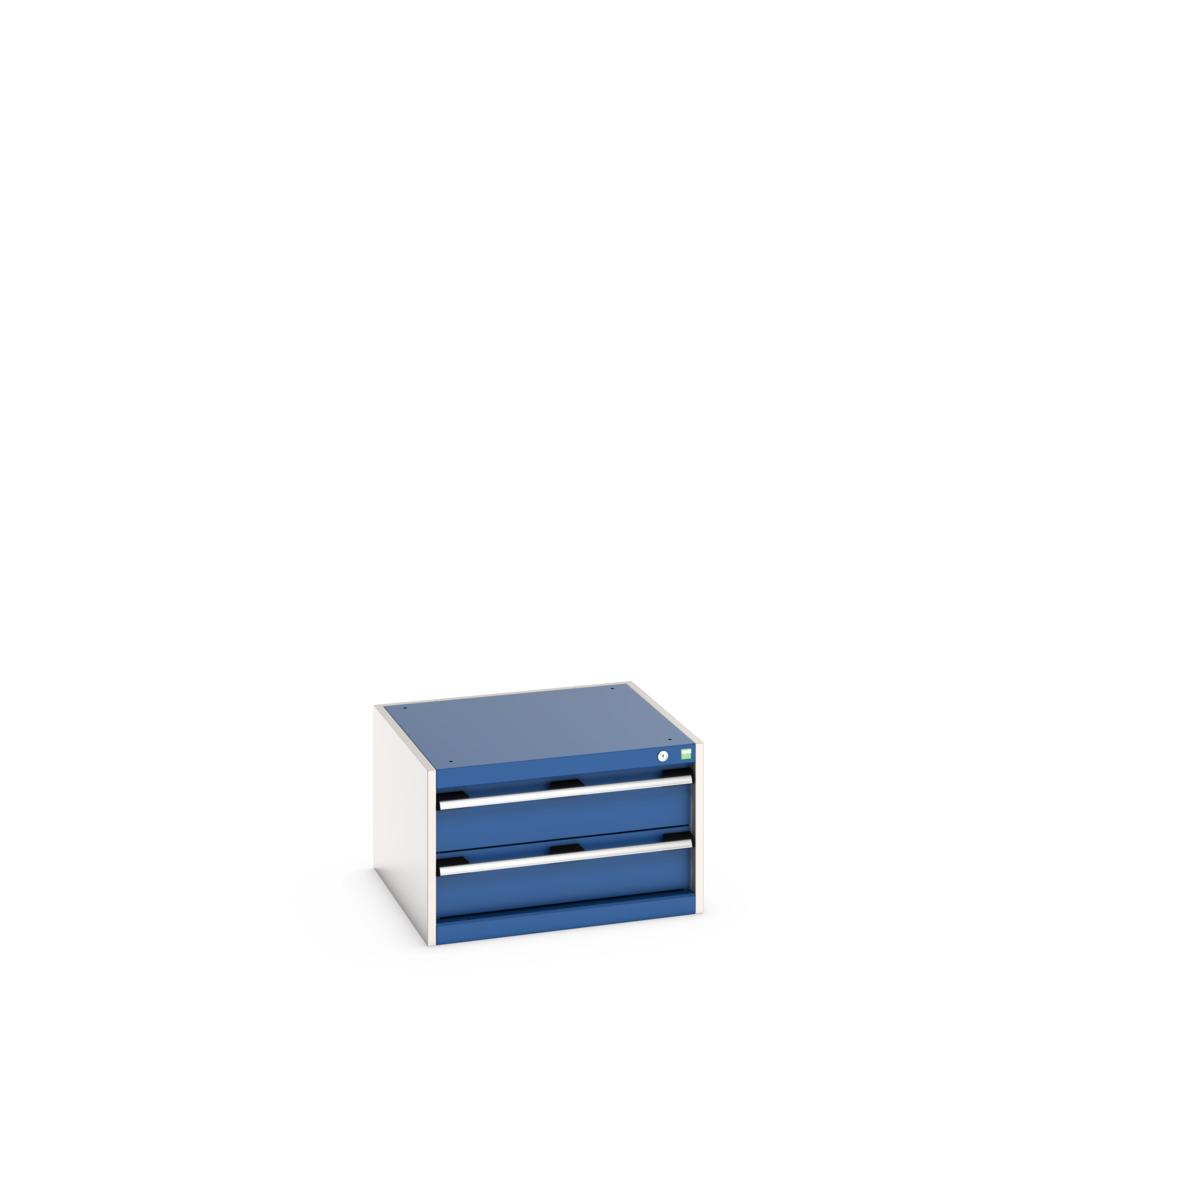 40019005.11V - cubio drawer cabinet